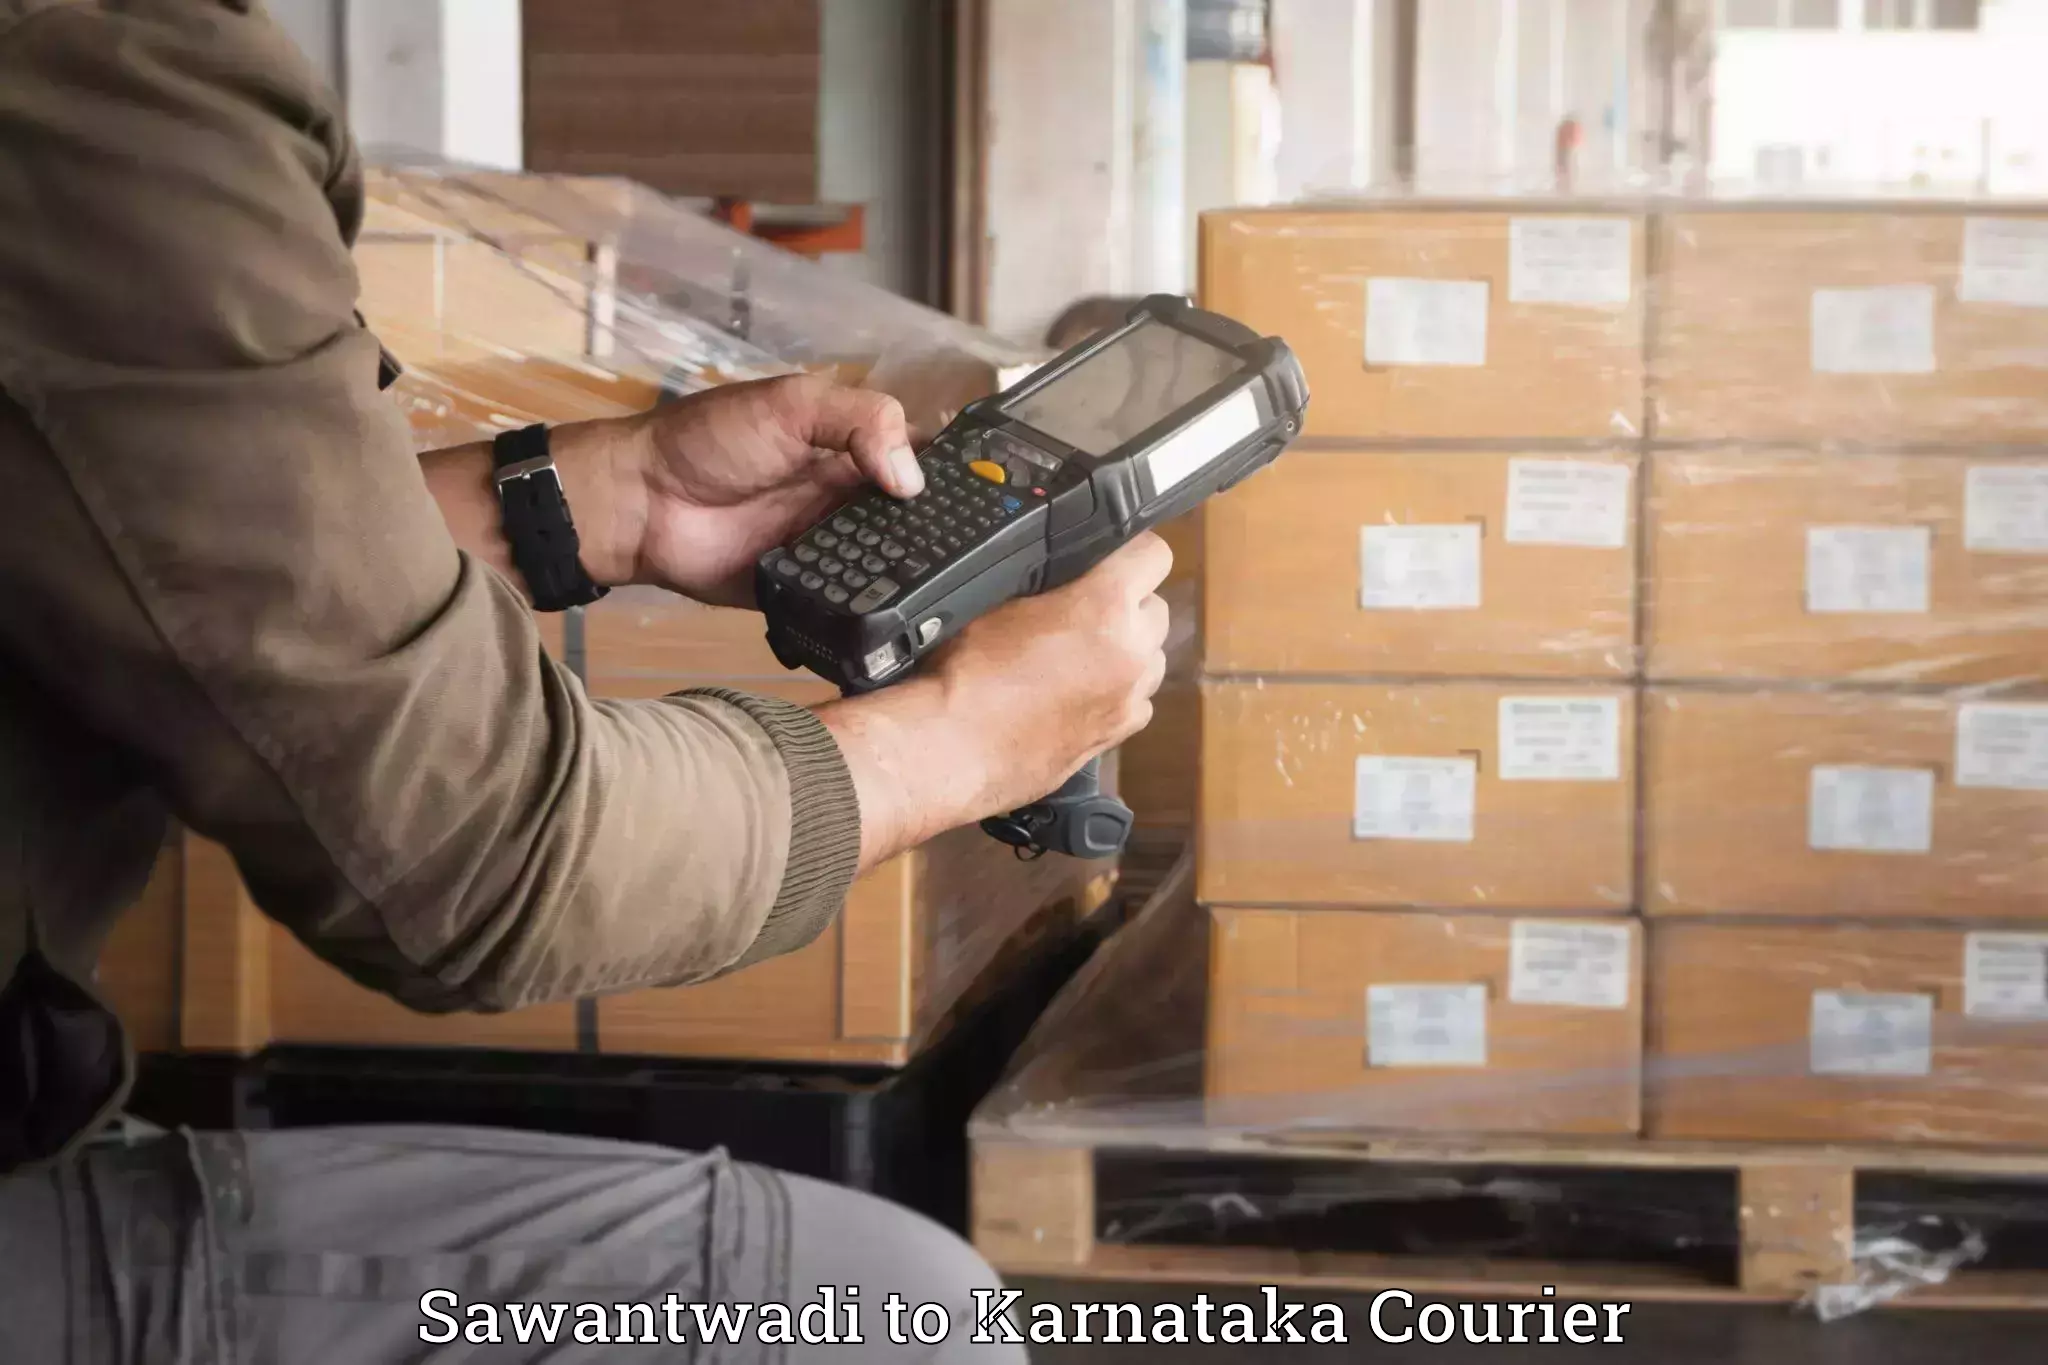 Baggage delivery optimization Sawantwadi to Kanjarakatte